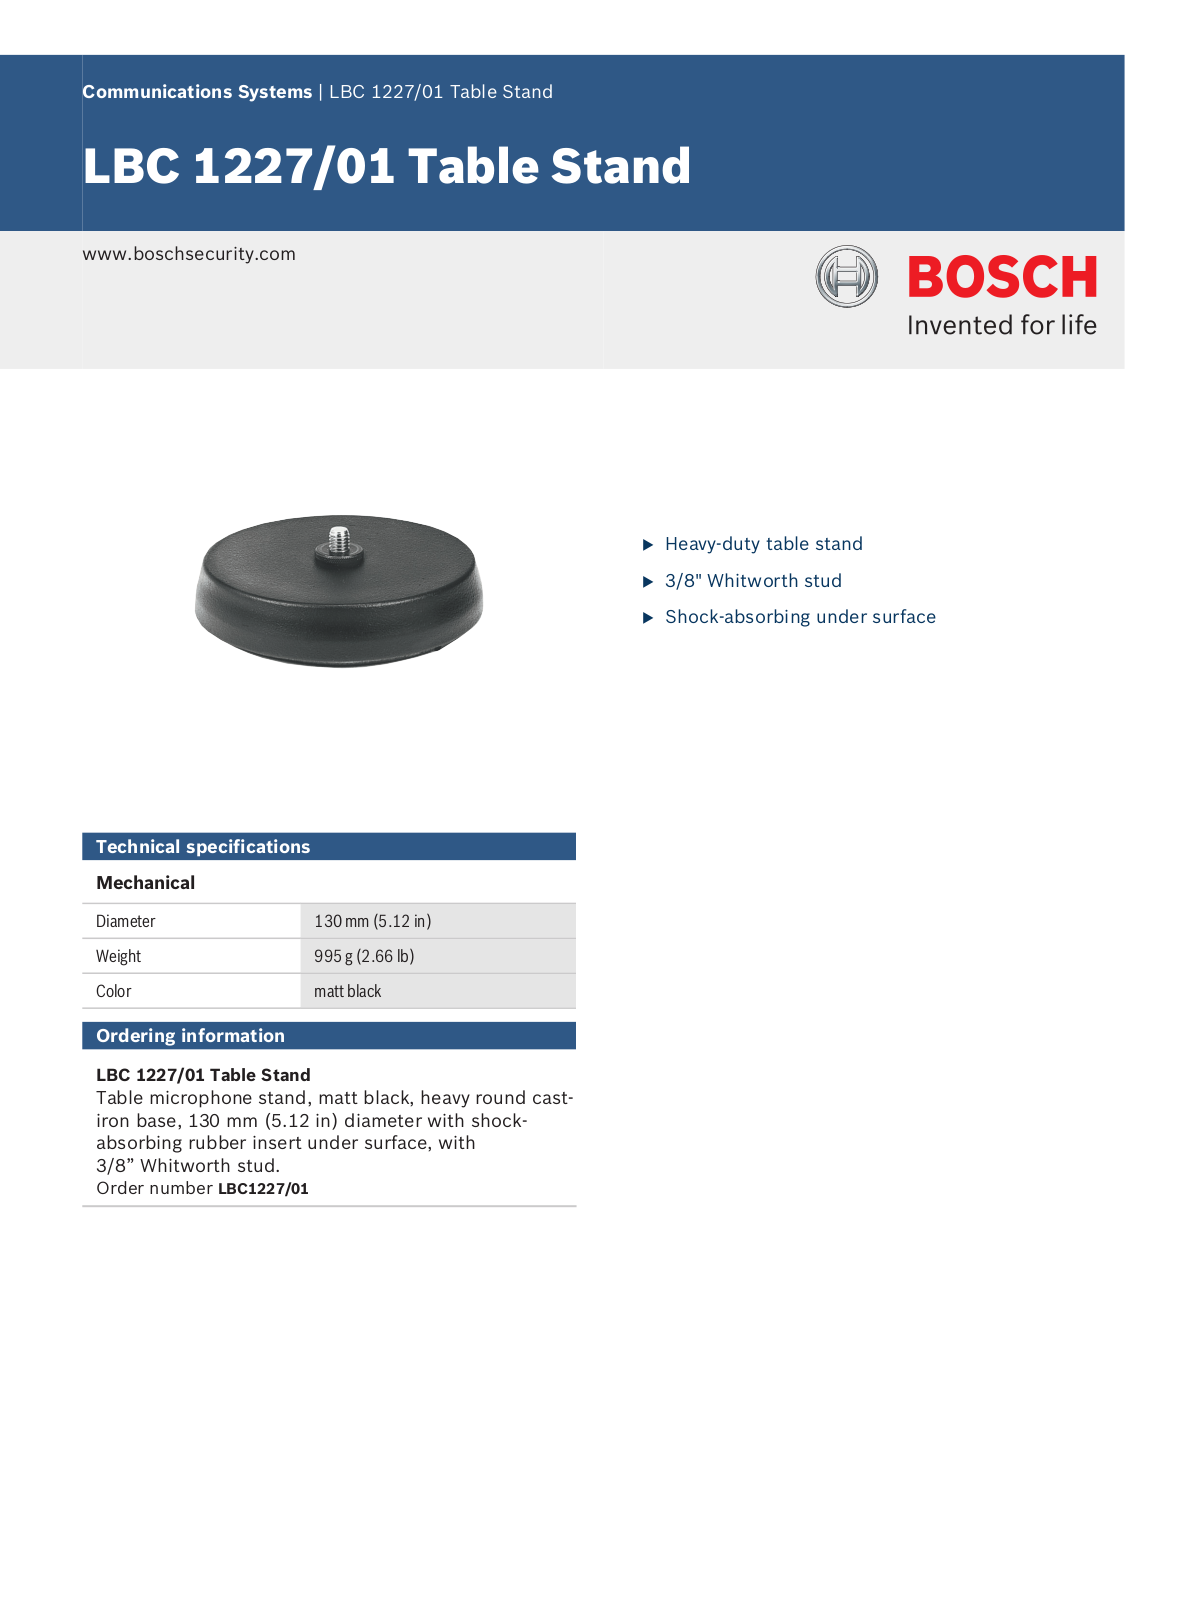 Bosch LBC1227-01 Specsheet